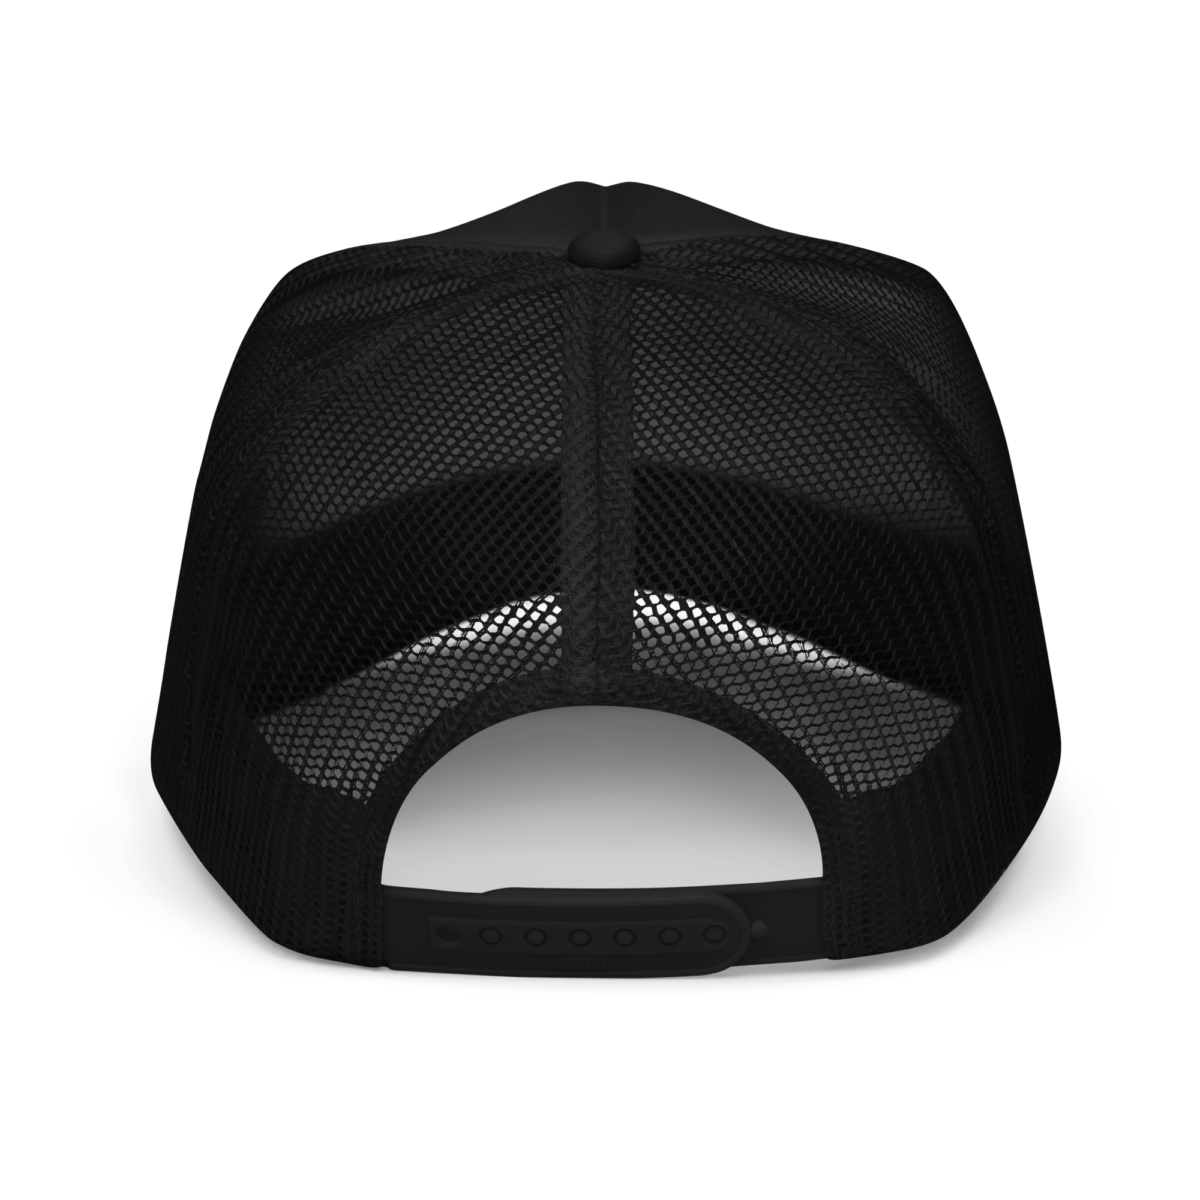 foam trucker hat black one size back 632b6a246da3c - Crypto Clothing